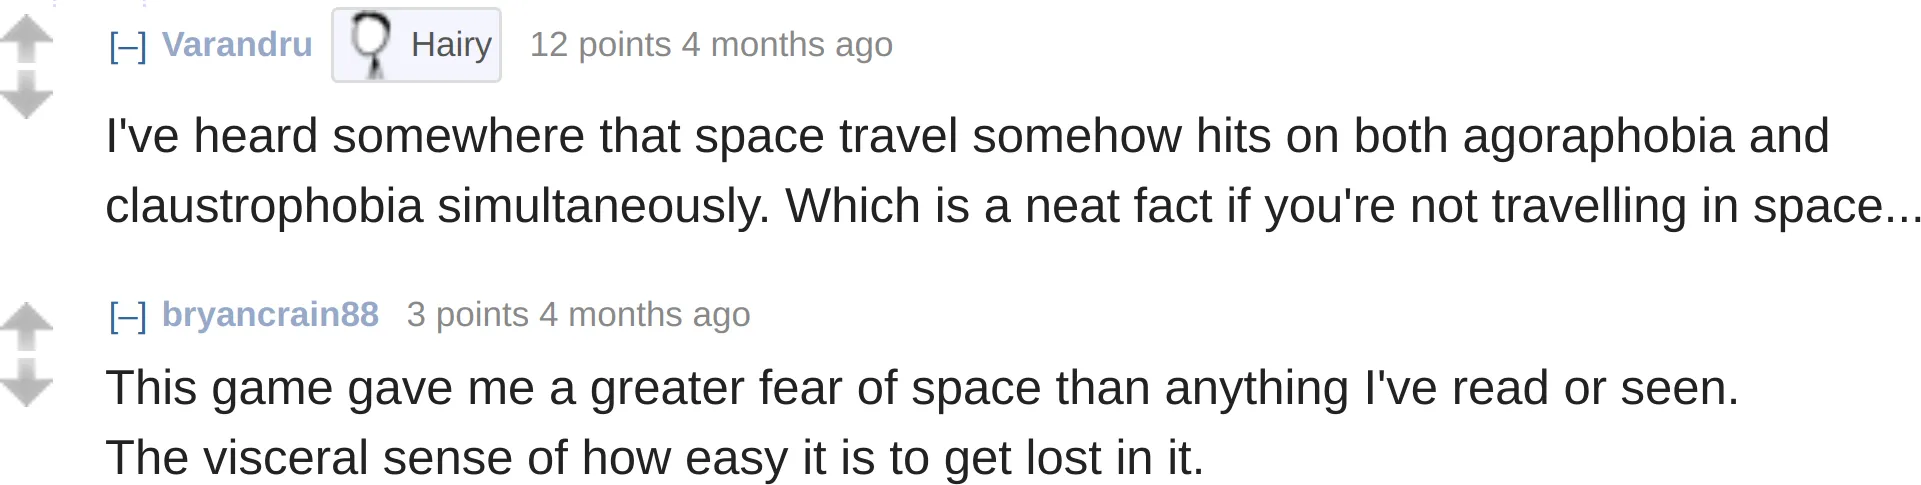 reddit comments on Escape Speed:
Varandru: 